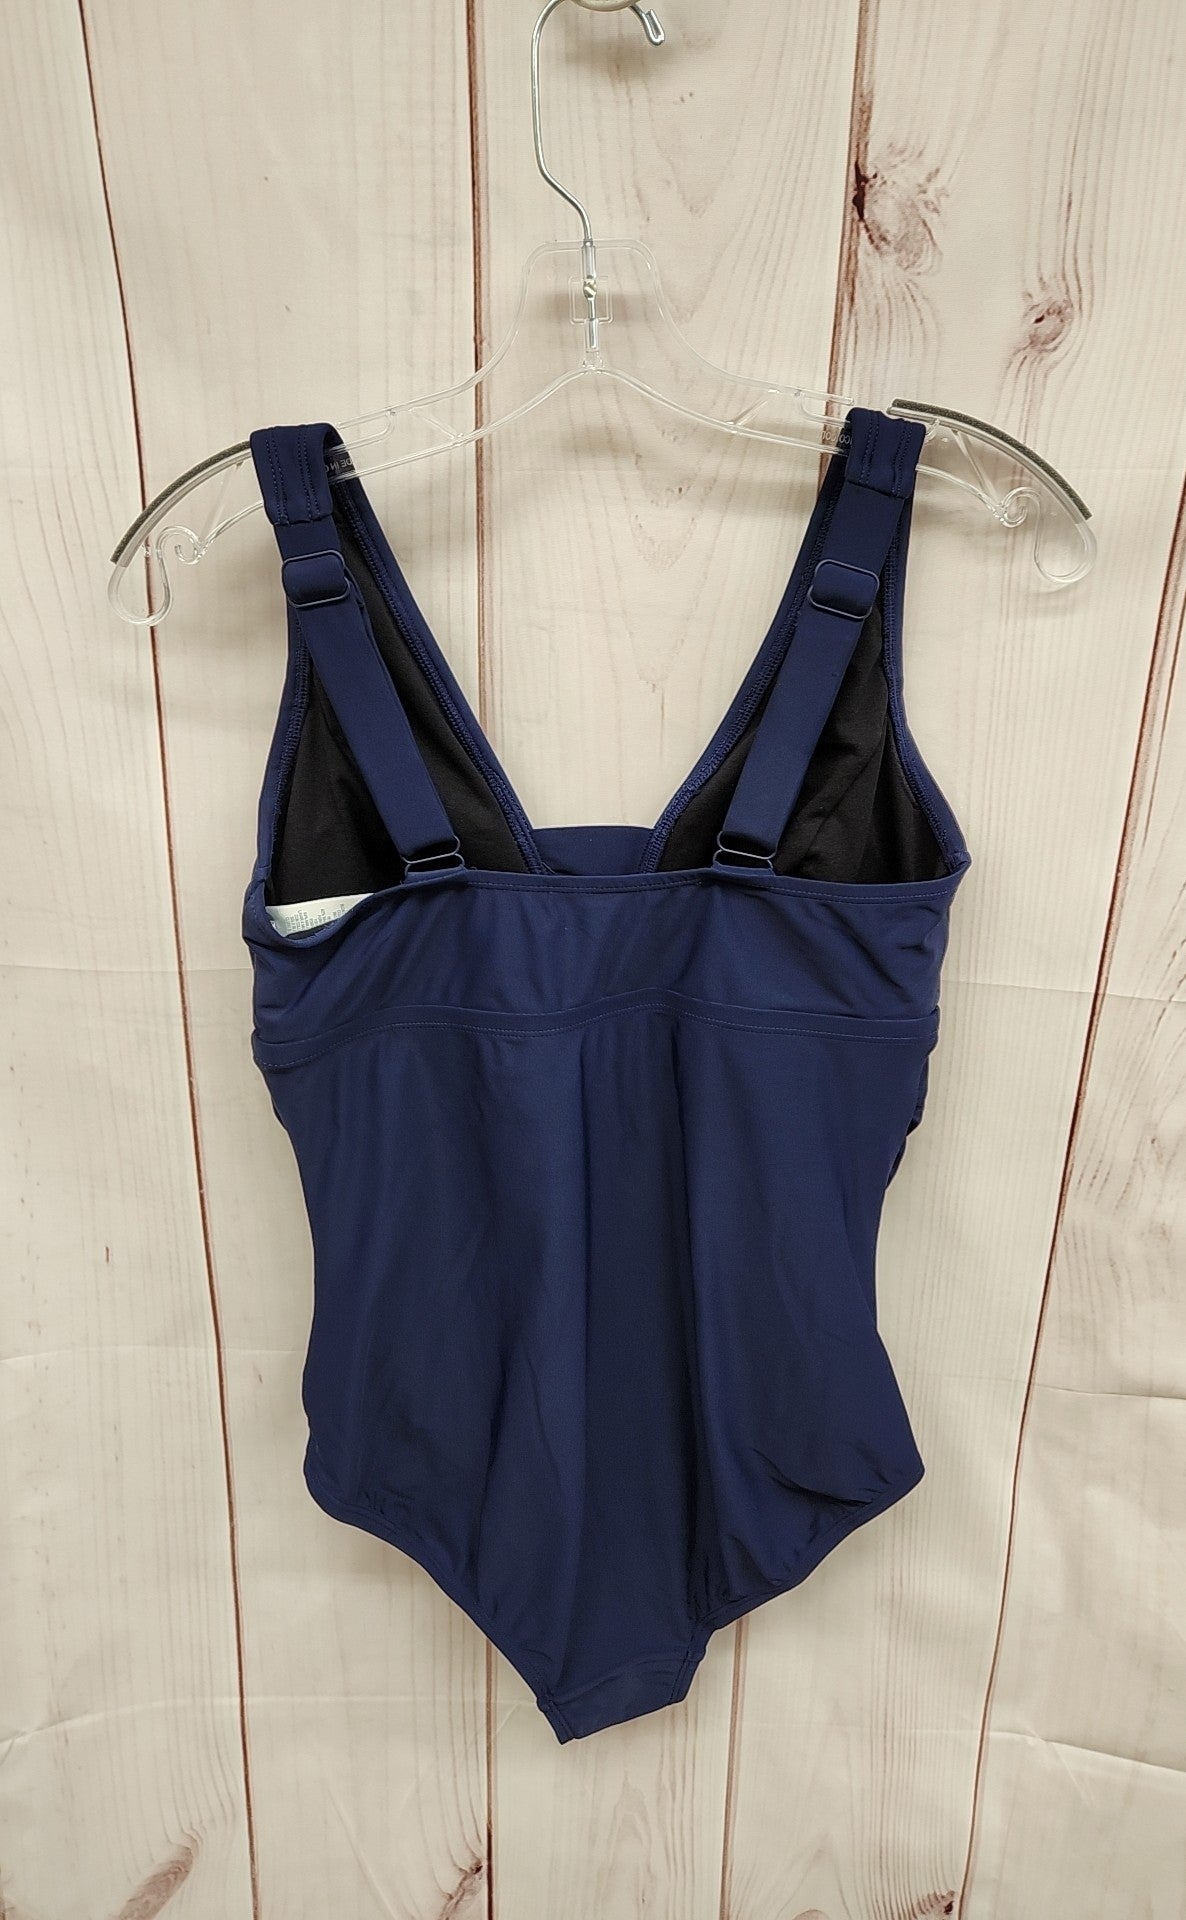 Kona Sol Women's Size M Navy Swimsuit